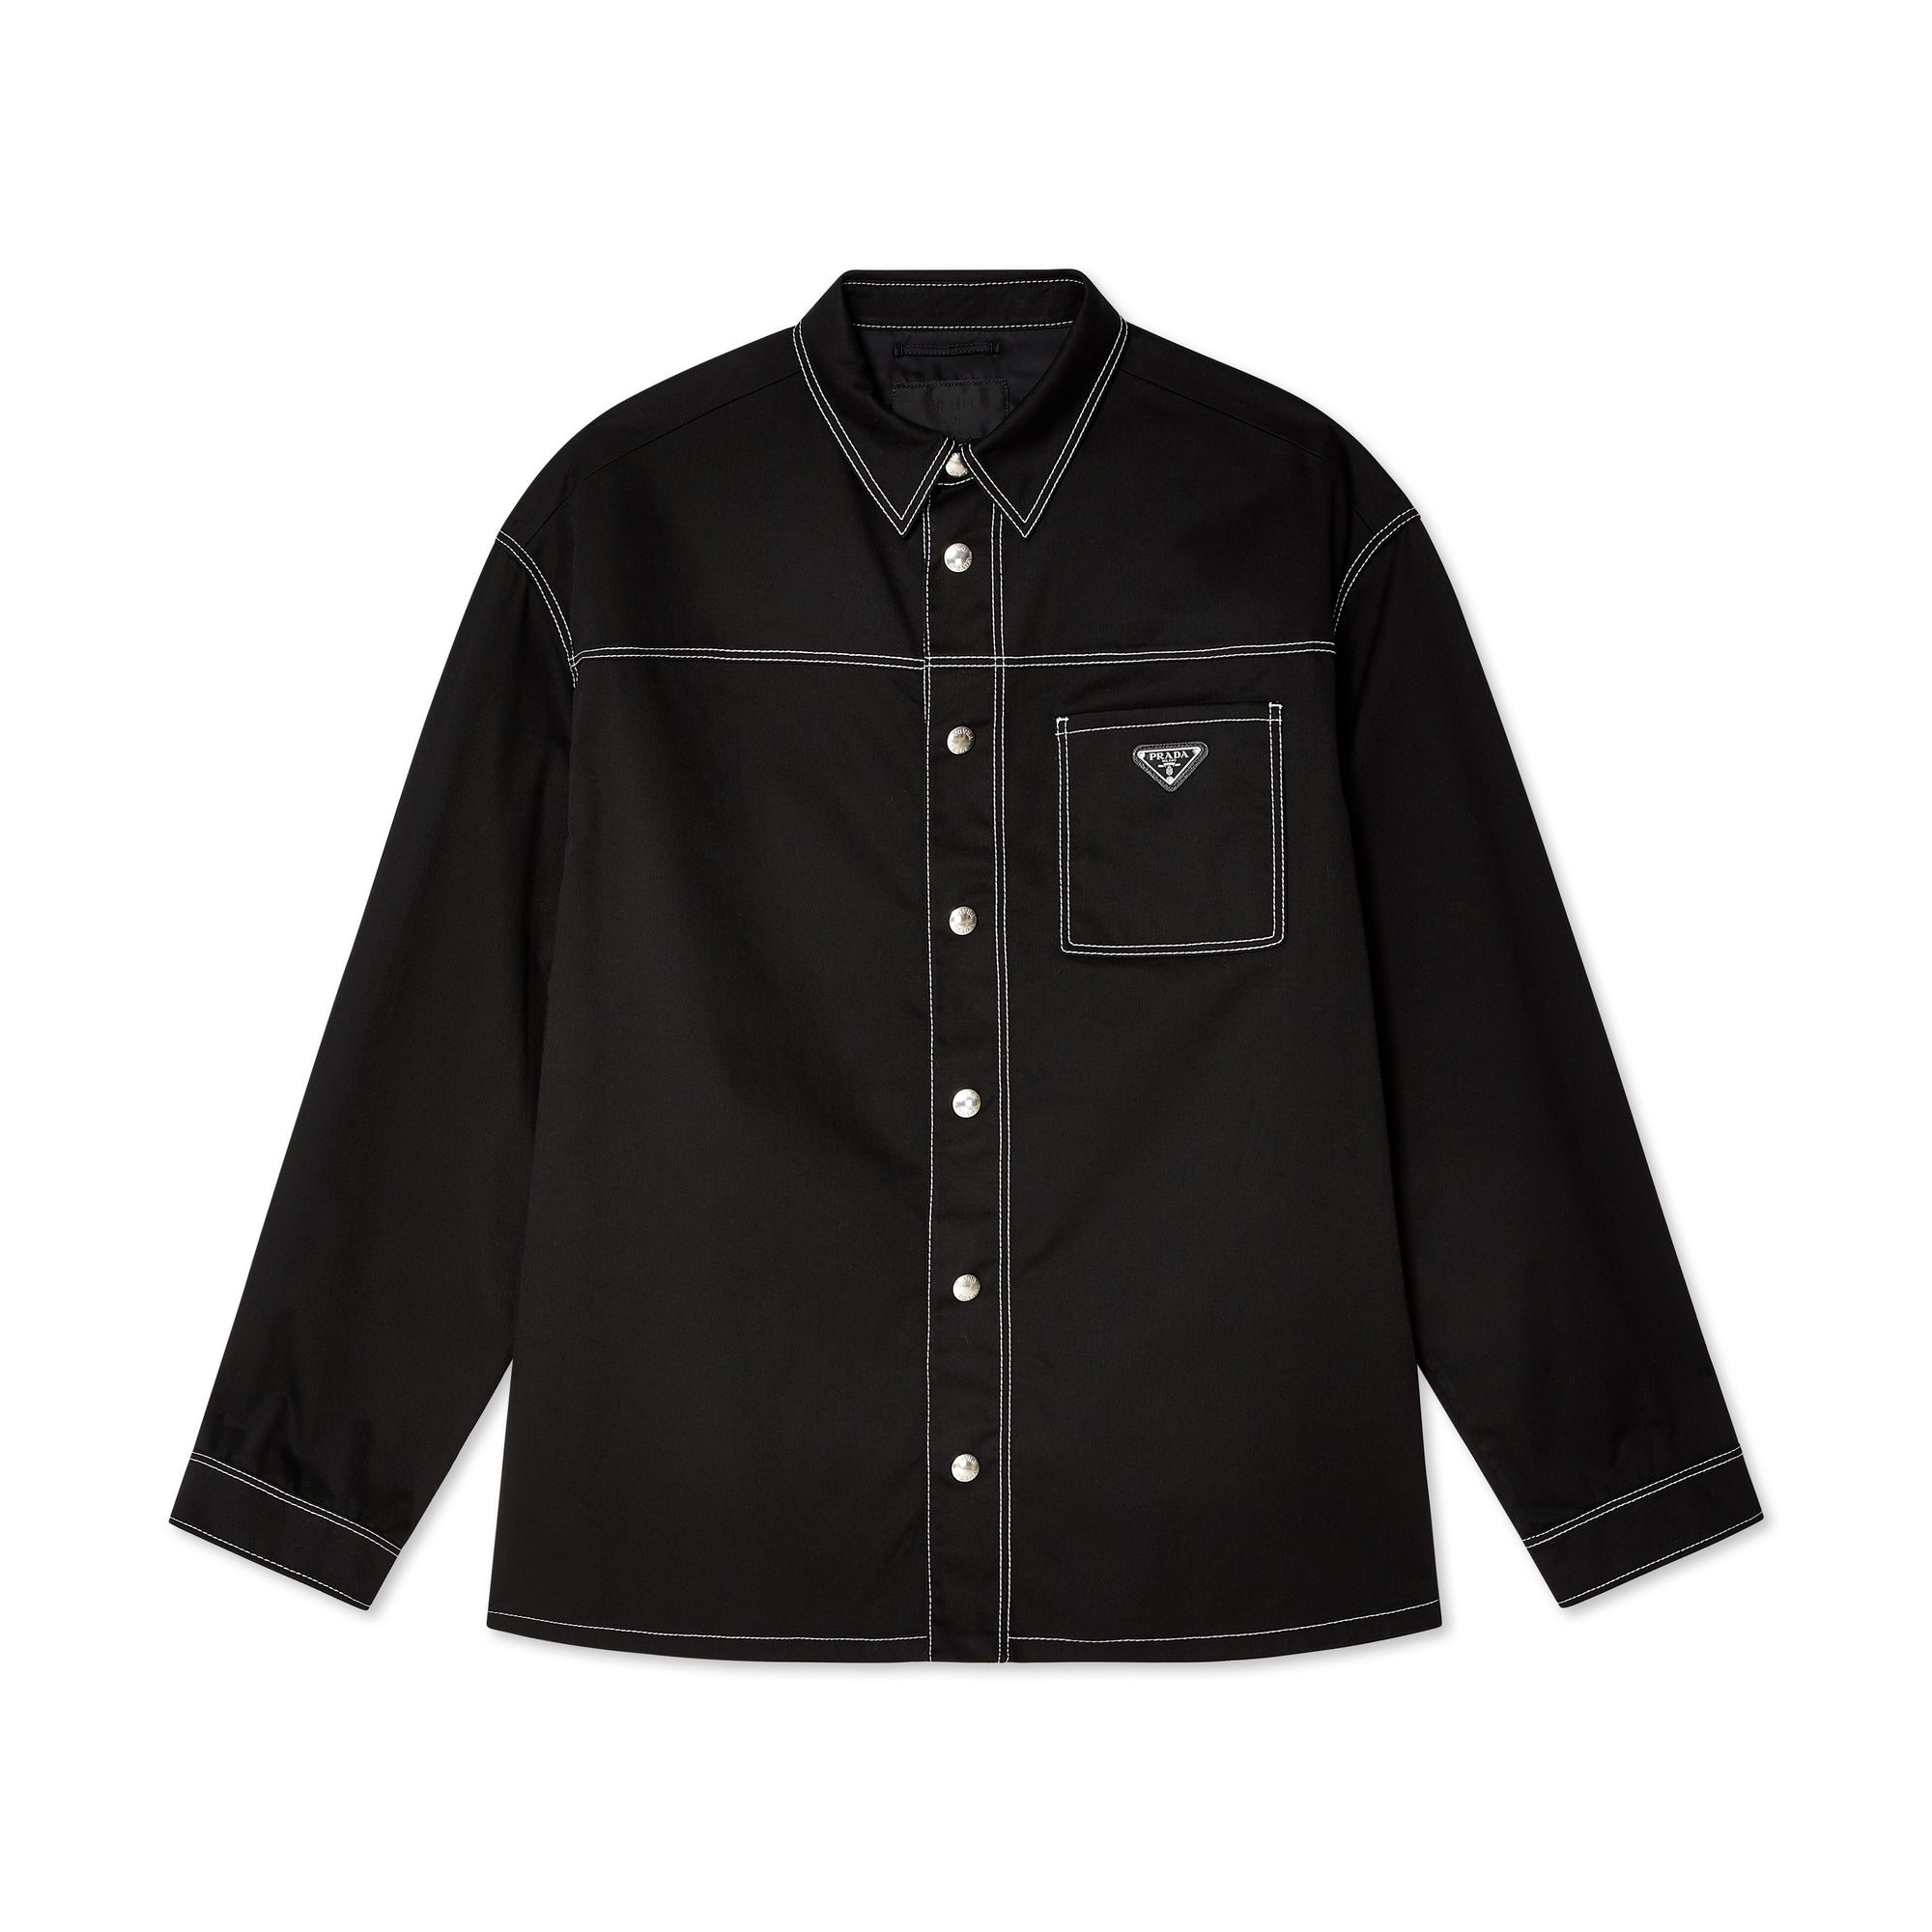 Prada - Men's Contrast Stitch Shirt - Black view 1